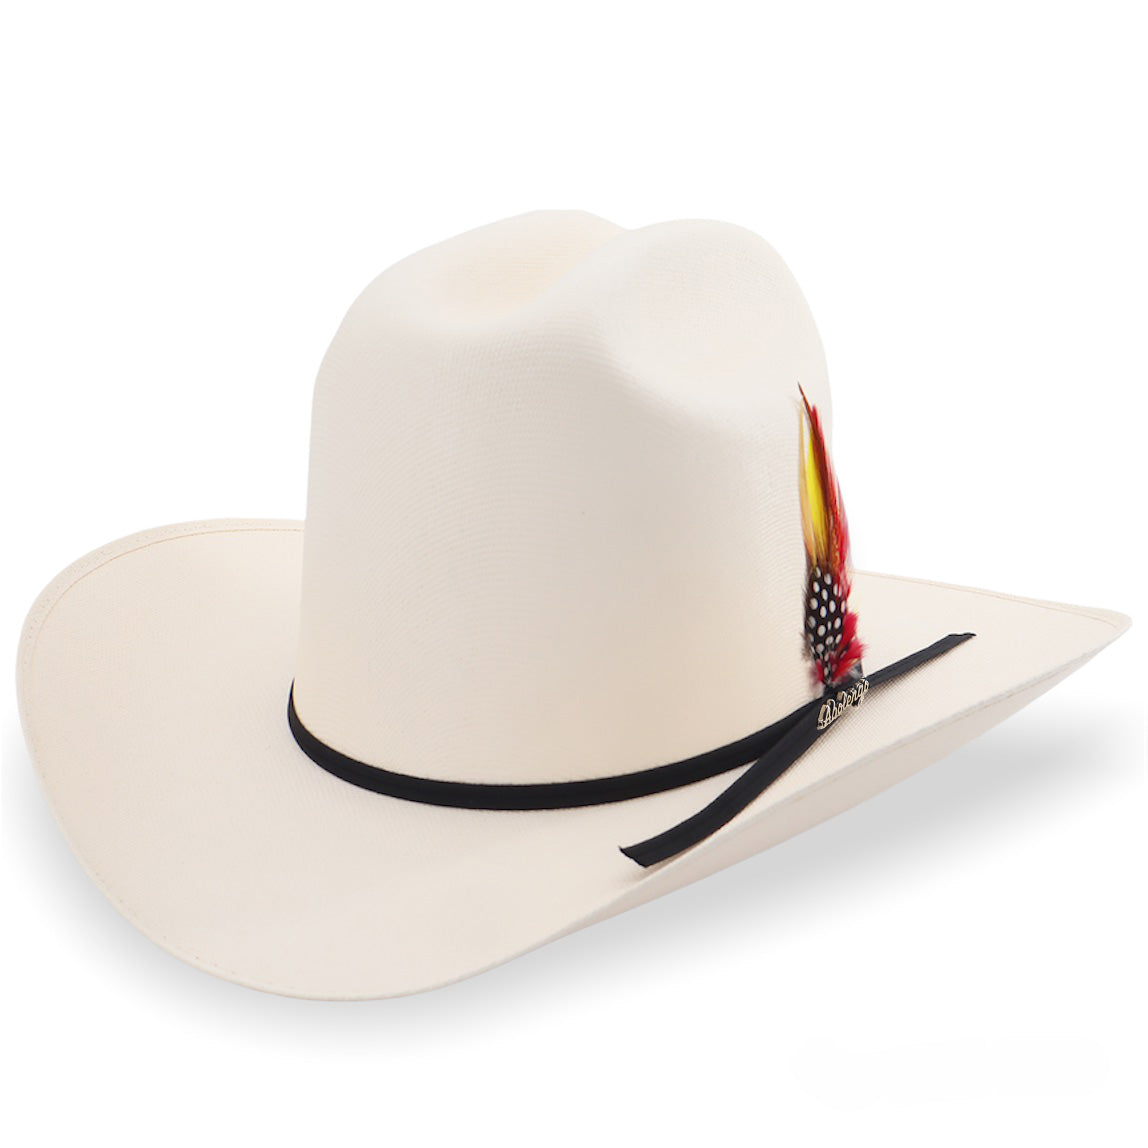 Kids Mexican Style Cowboy Hat / Sombrero Duranguense Pa Nino Estilo Vaquero